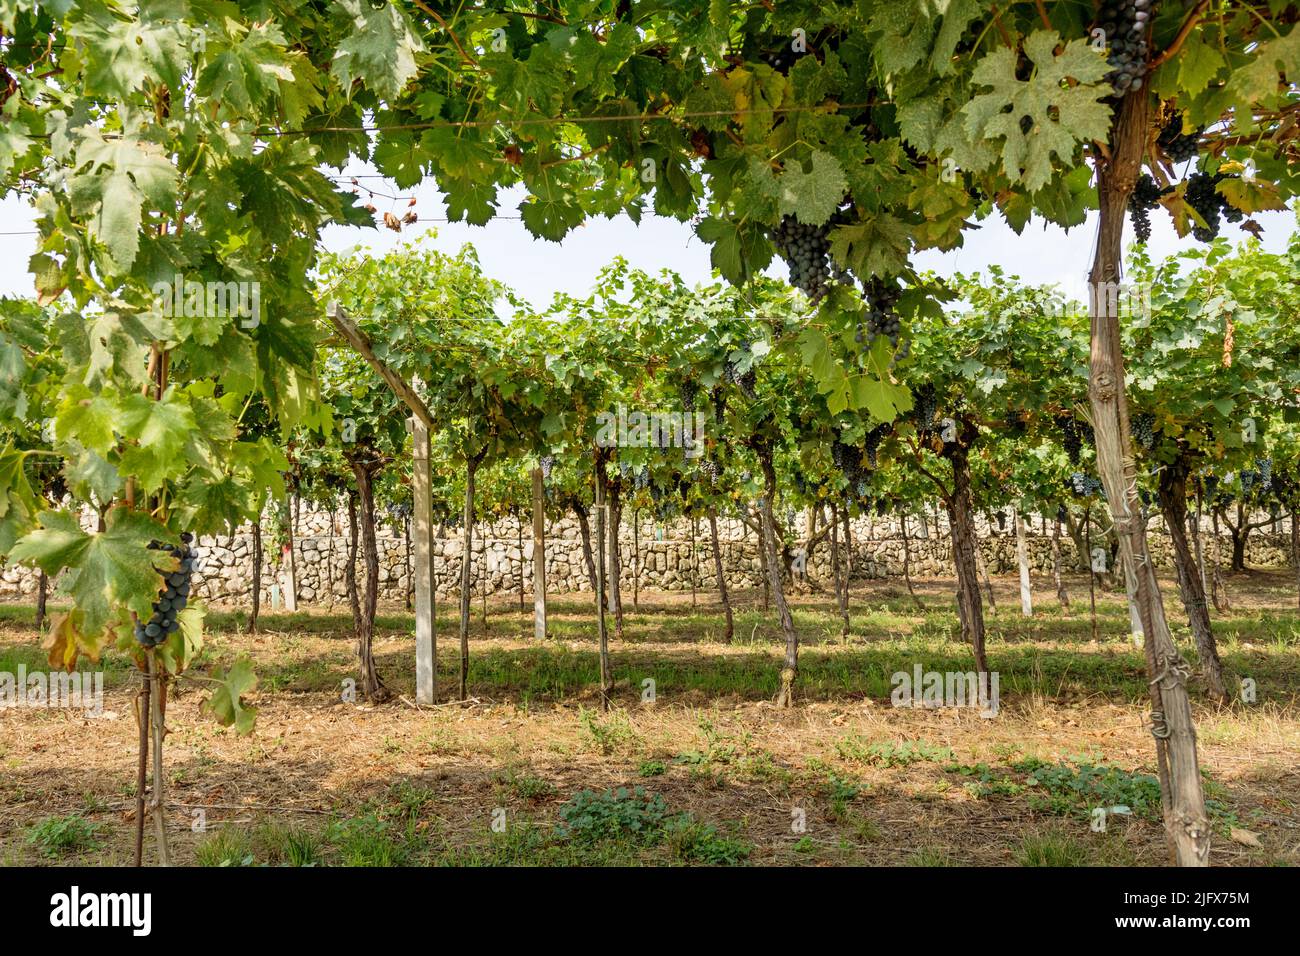 Espectacular paisaje de árboles verdes con uvas maduras creciendo en viñedos situados en el campo durante el día Foto de stock